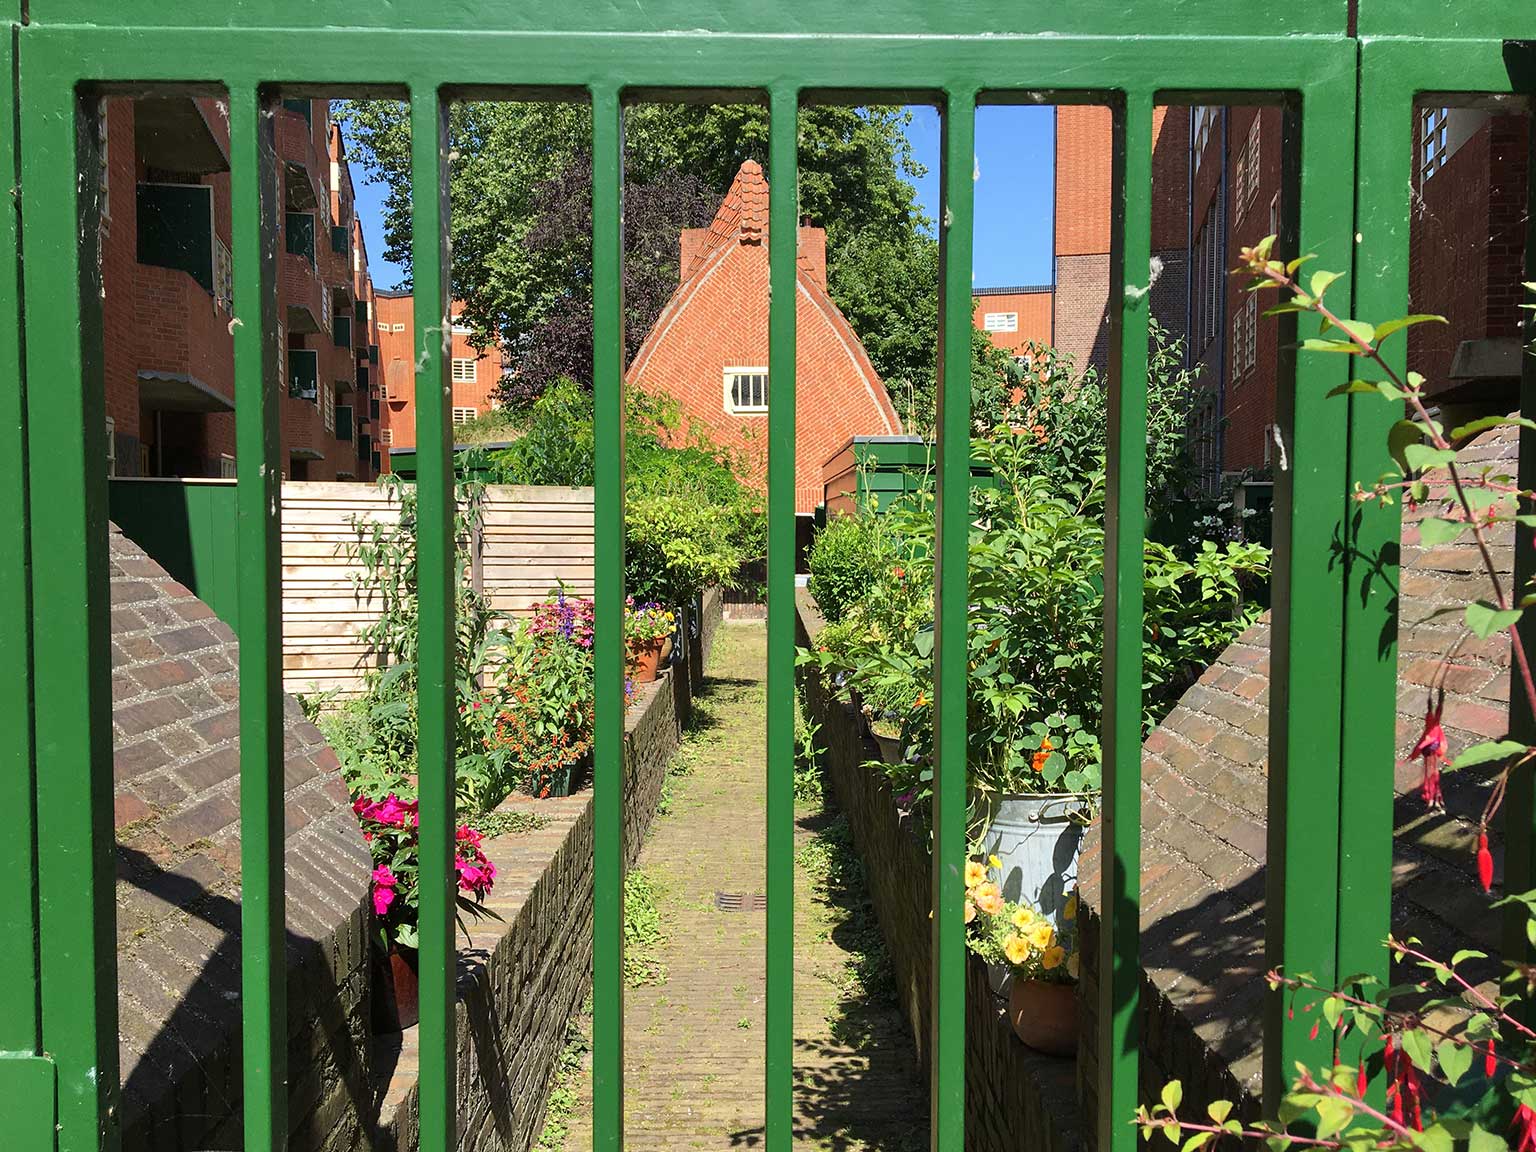 Huizenblok Het Schip, Amsterdam, binnenplaats gezien door een hek